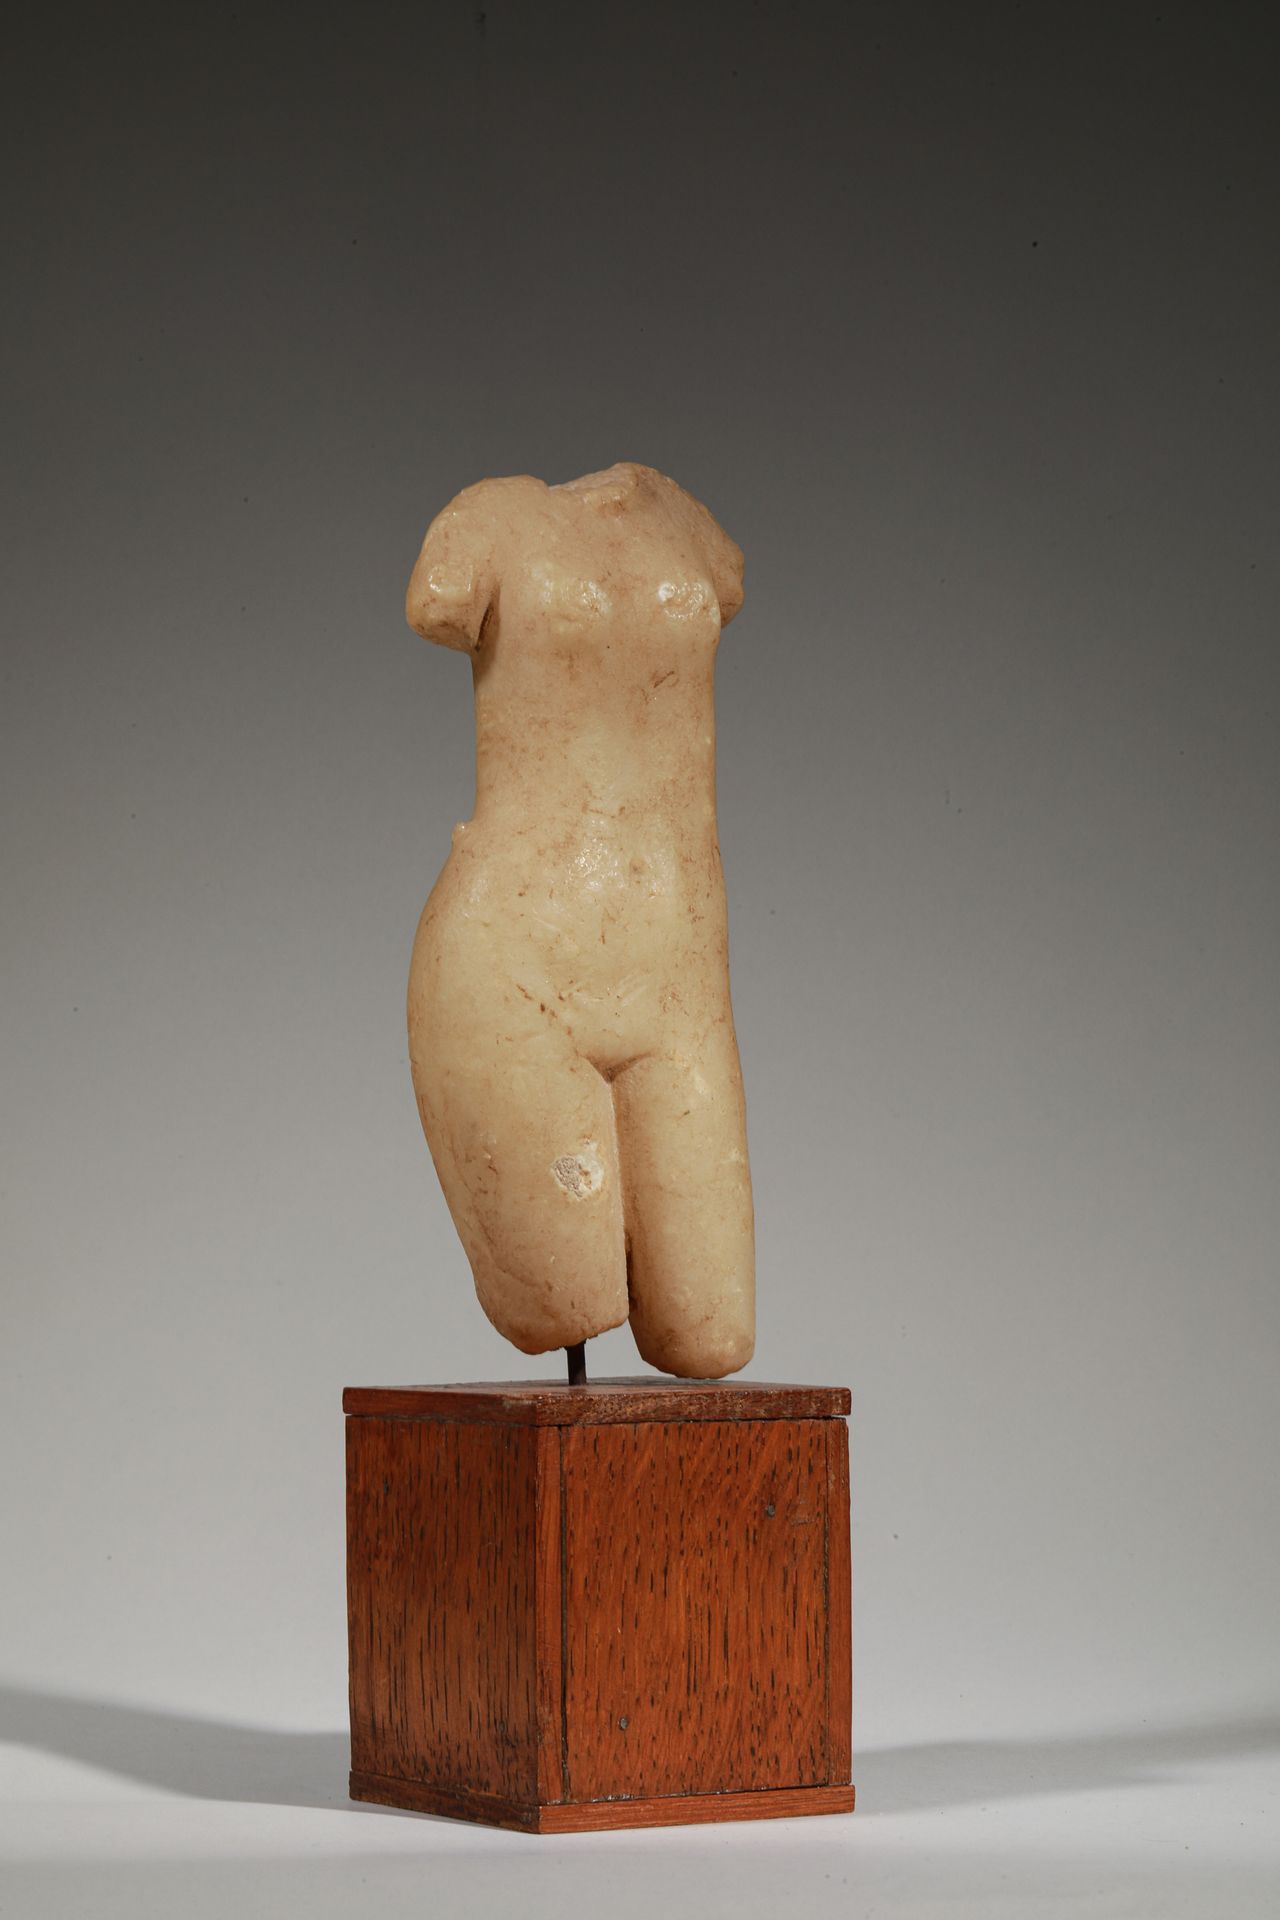 Null 大理石雕塑（？），代表一个略带拱形的无头女性半身雕像
石灰石凝结物的遗迹
可能是罗马人的作品，1和2世纪
高17厘米